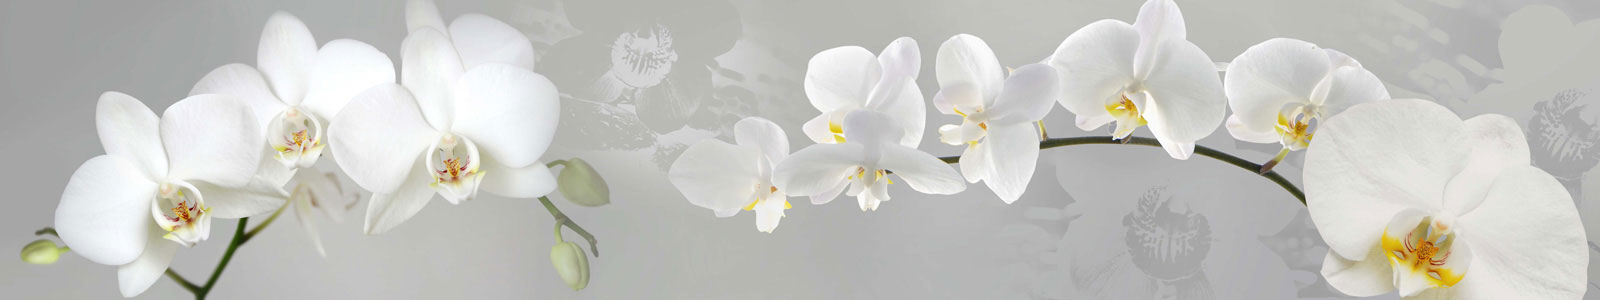 №2420 - Белые орхидеи на серебряном фоне